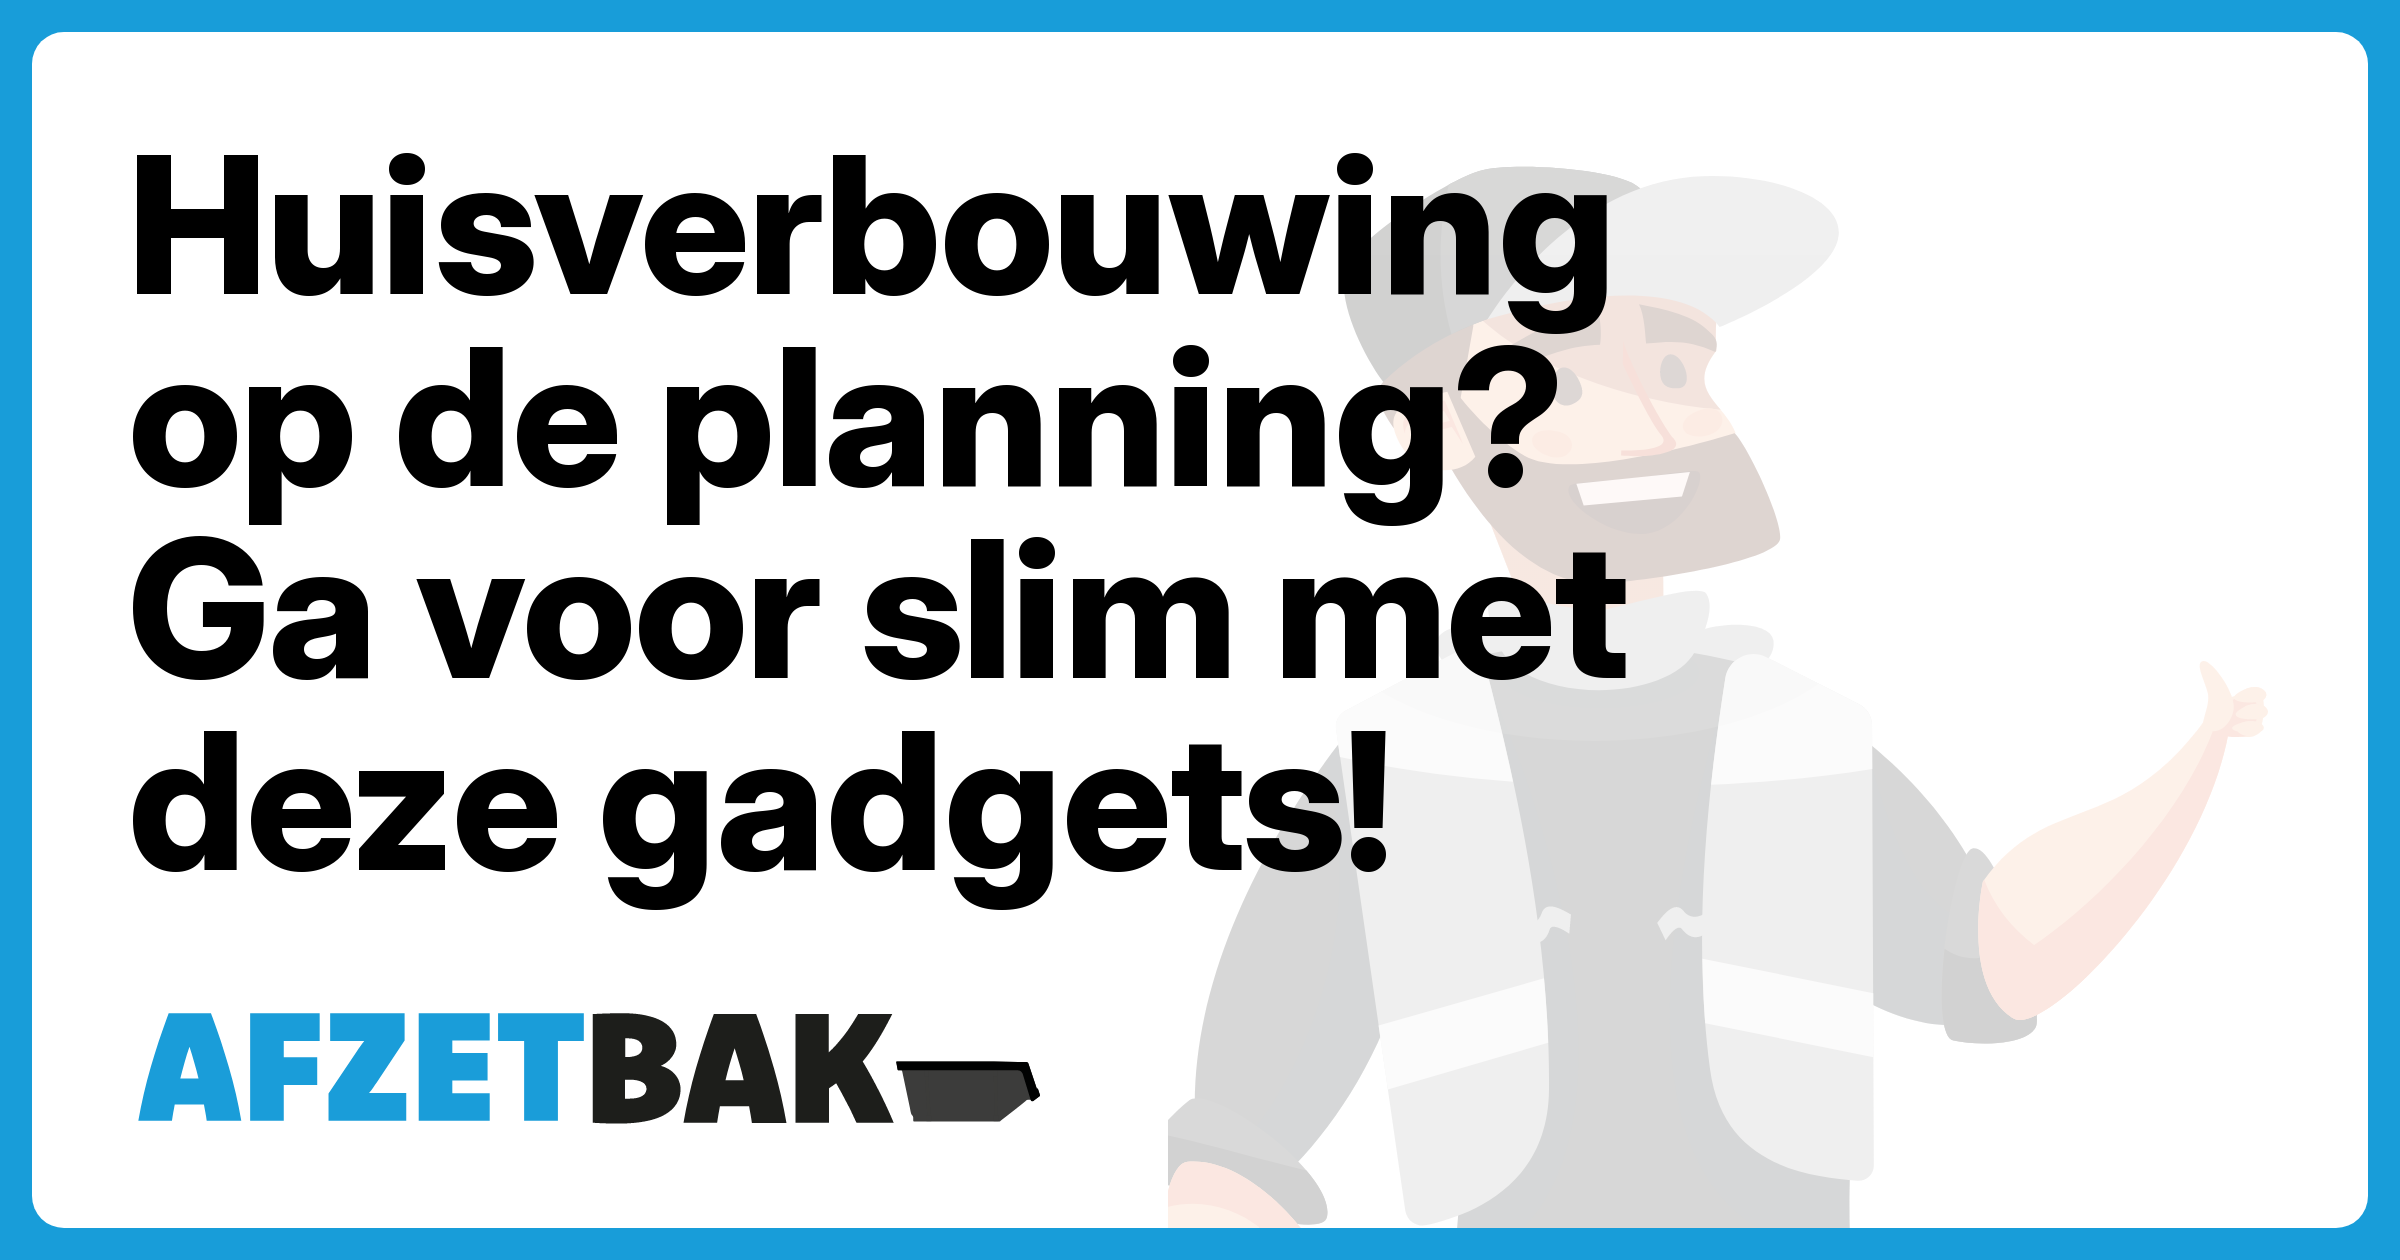 Huisverbouwing op de planning? Ga voor slim met deze gadgets! - Afzetbak.nl